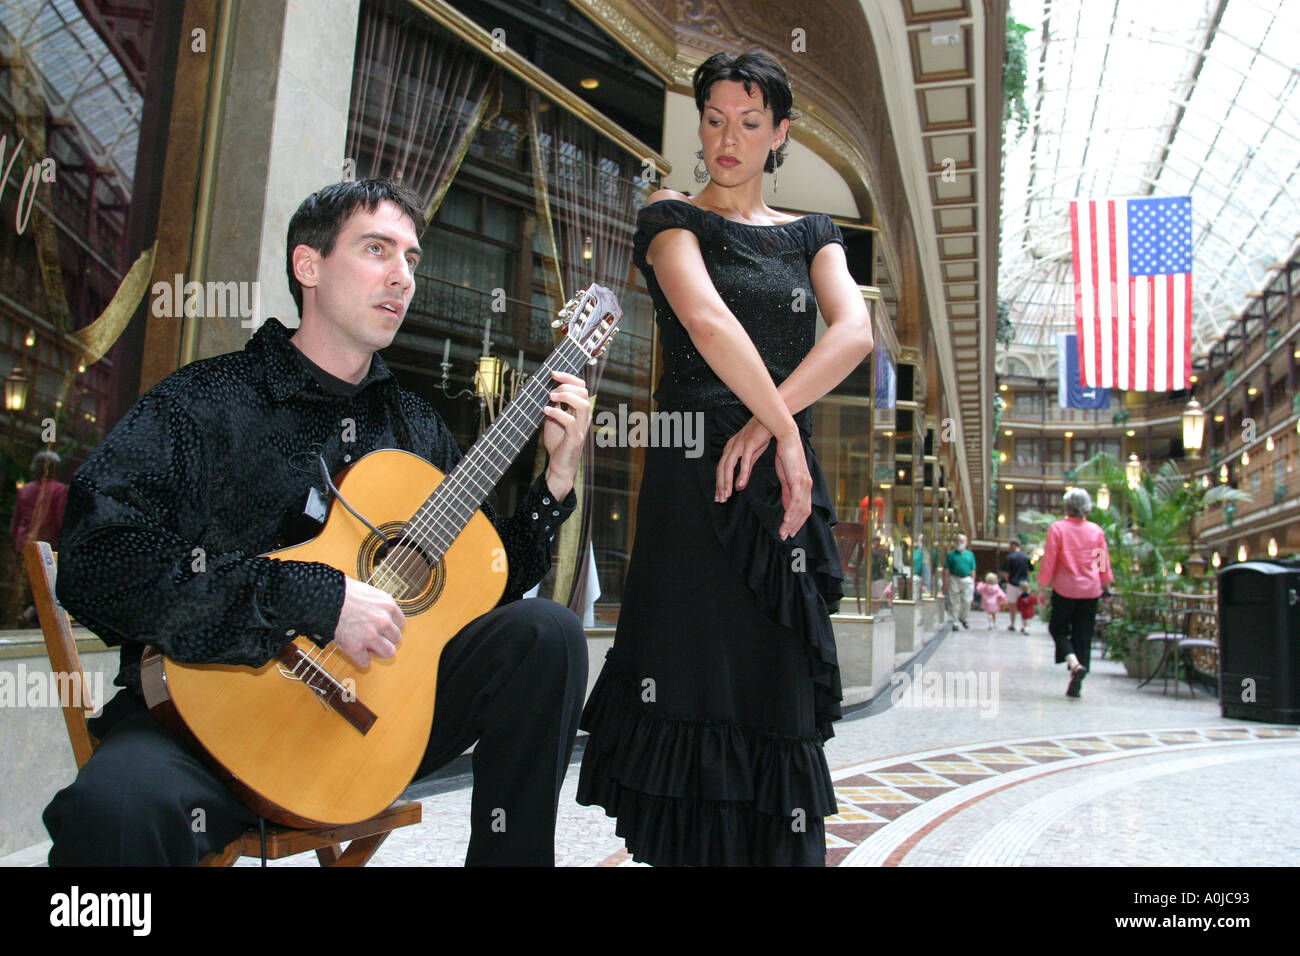 Cleveland Ohio,The Arcade,ballerino di flamenco,chitarra,musica spagnola,cultura,intrattenimento,spettacolo,spettacolo,OH0611040022 Foto Stock